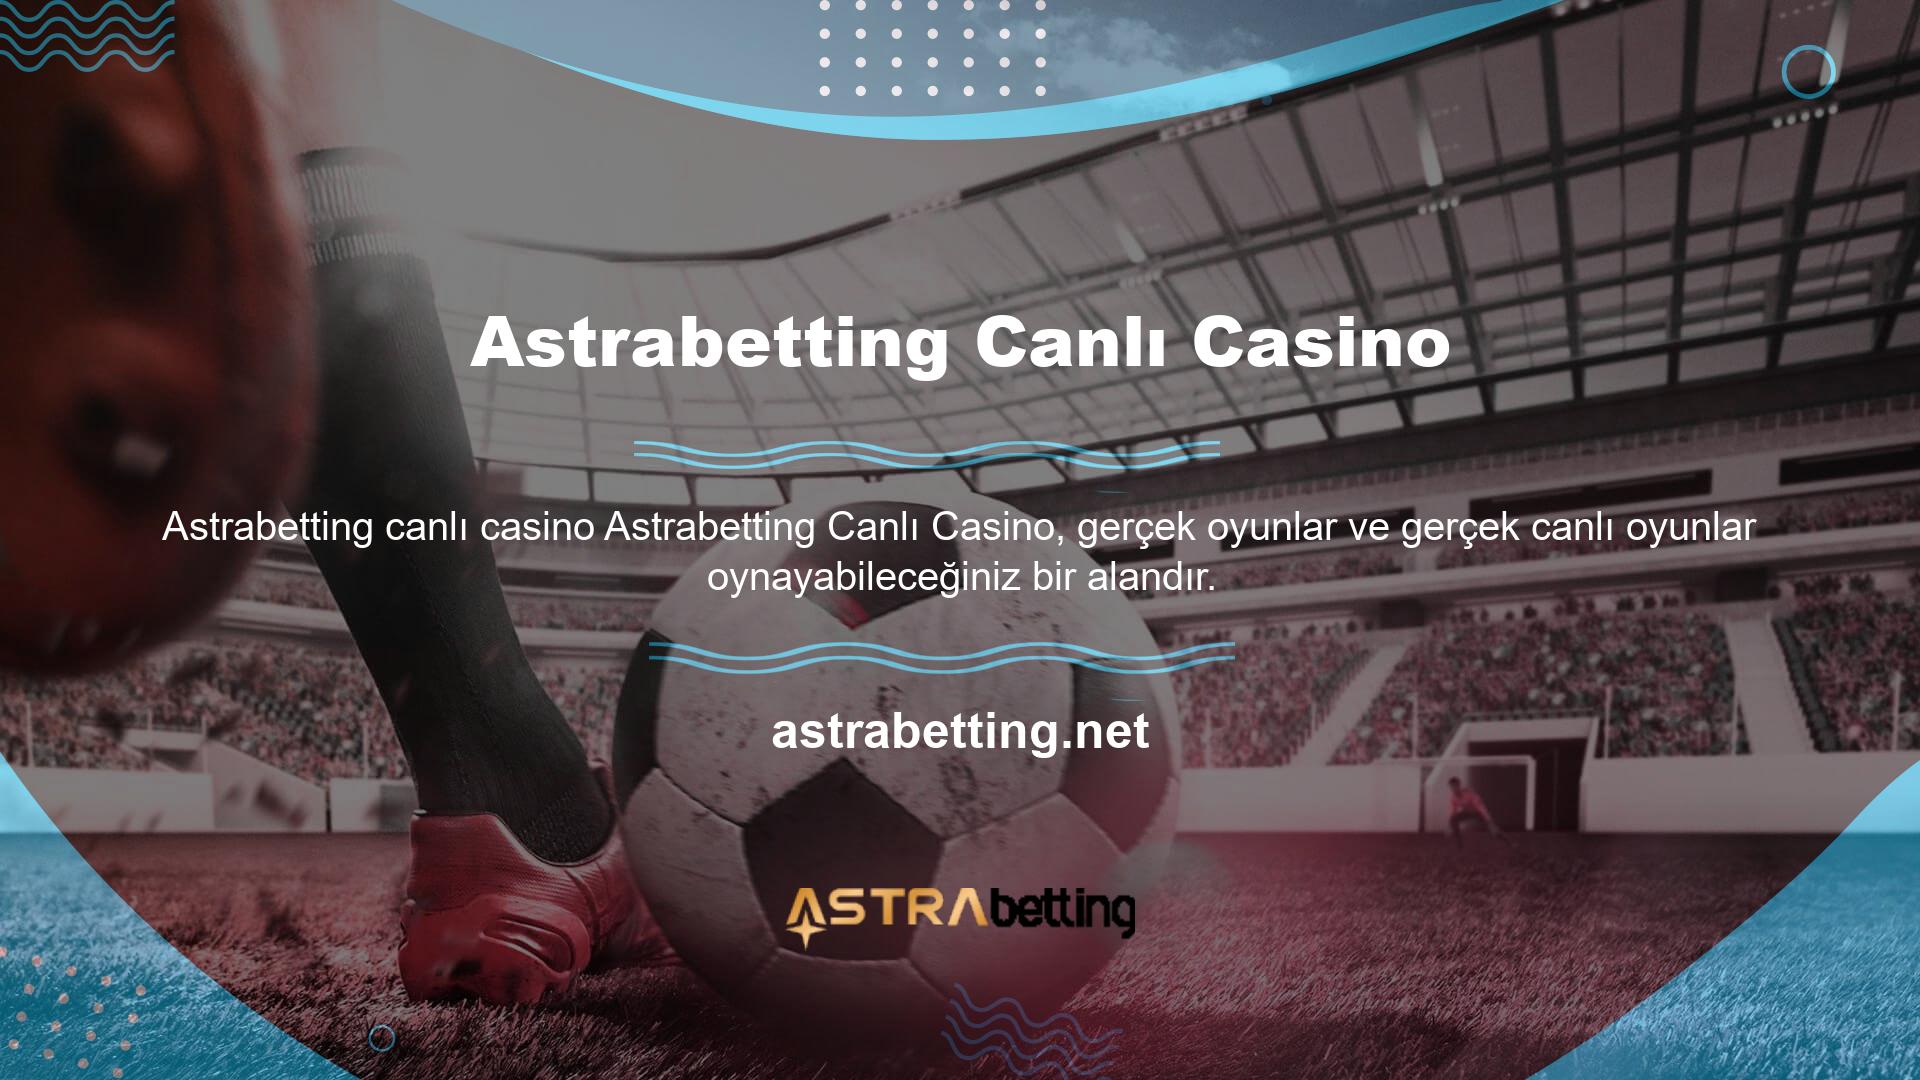 Astrabetting web sitesi, farklı canlı casino oyunlarına alternatifler oluşturmuştur